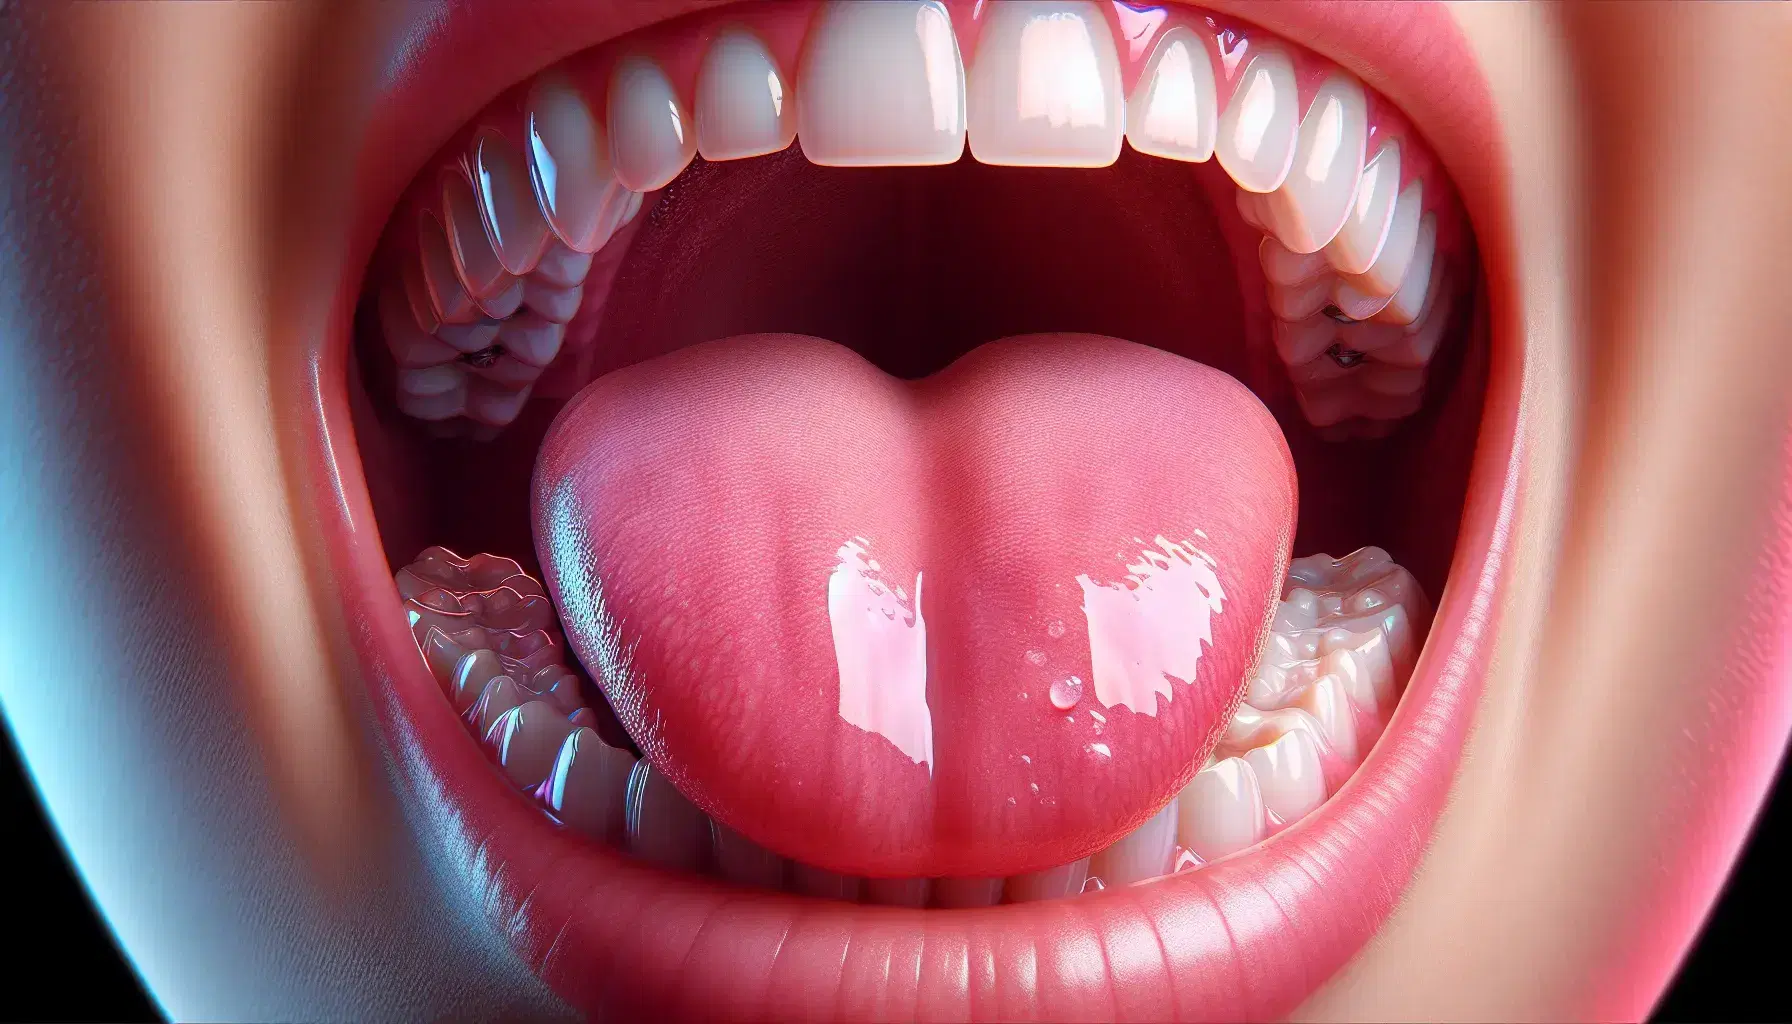 Primer plano de una boca abierta mostrando una lengua rosada y sana, dientes blancos y alineados, y encías firmes sin inflamación.